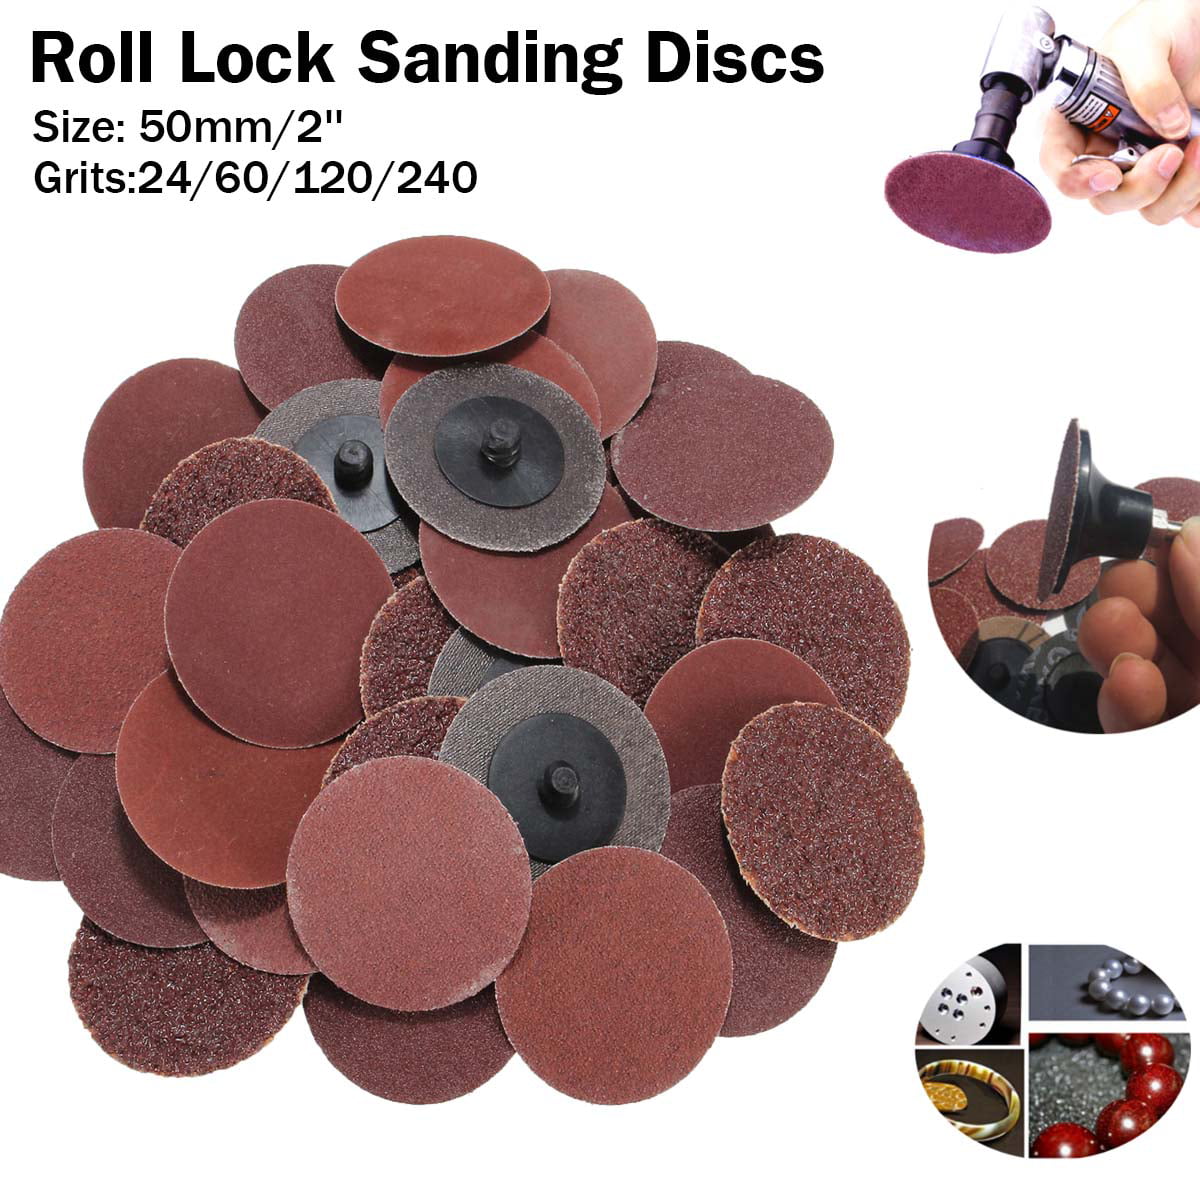 40Pcs Roloc Sanding Discs Type R Roll Lock Discs Abrasives Pads Mix Grit 60-240# 